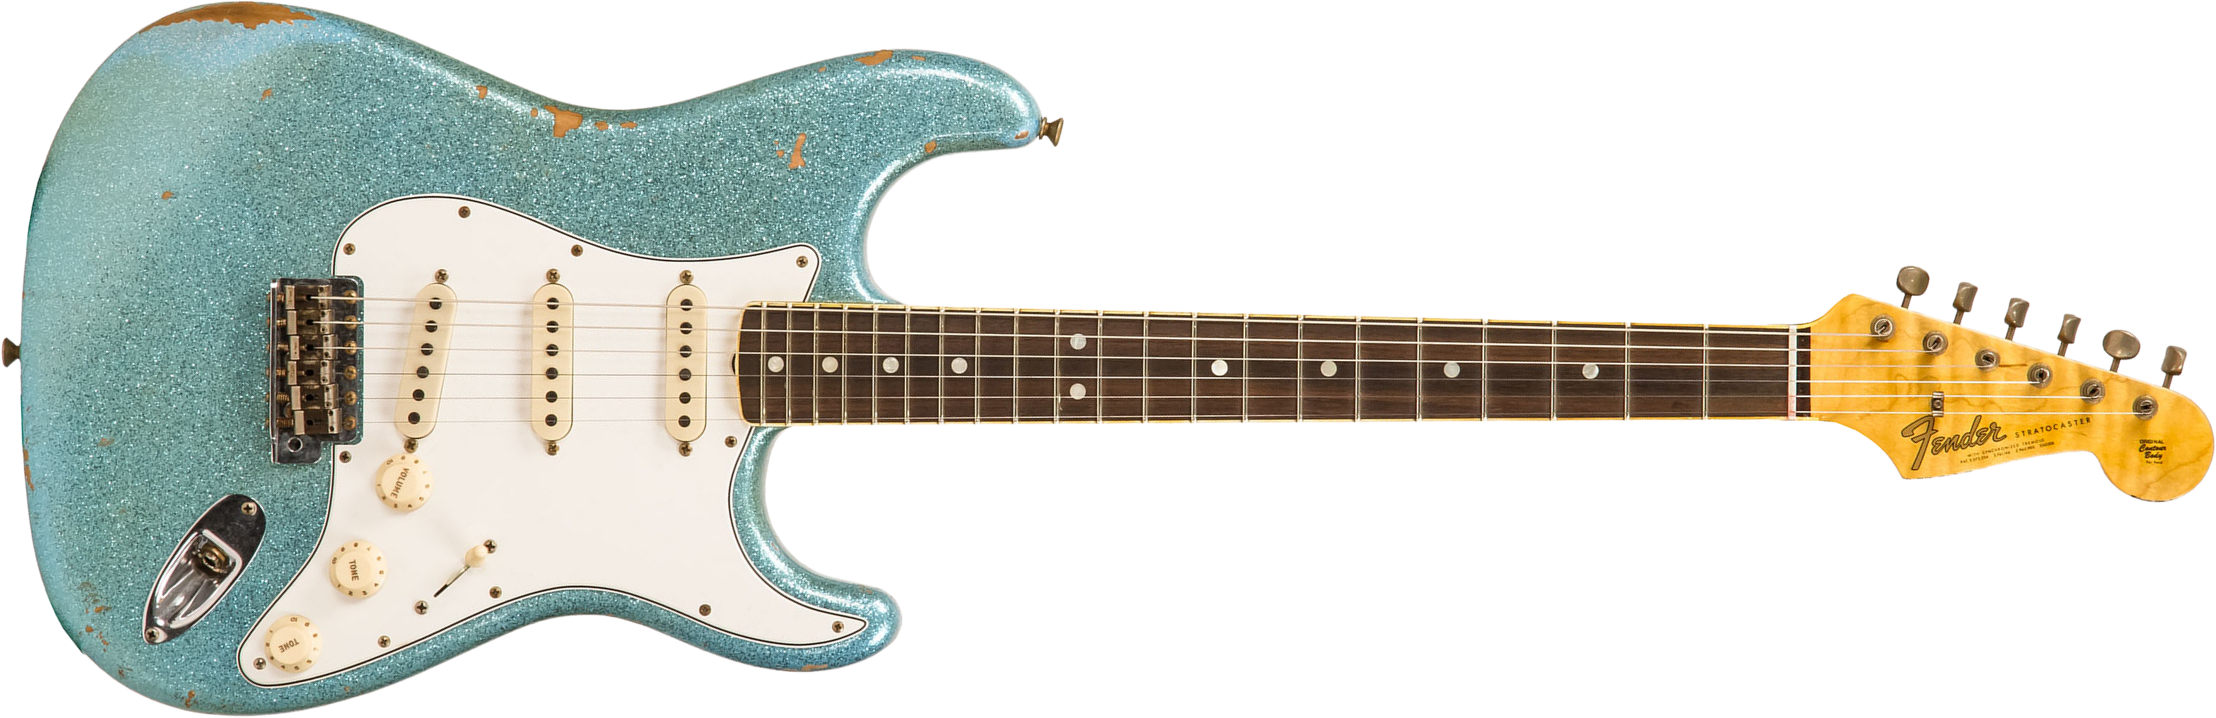 Fender Custom Shop Strat 1965 Ltd Usa Rw #cz548544 - Relic Daphne Blue Sparkle - Elektrische gitaar in Str-vorm - Main picture